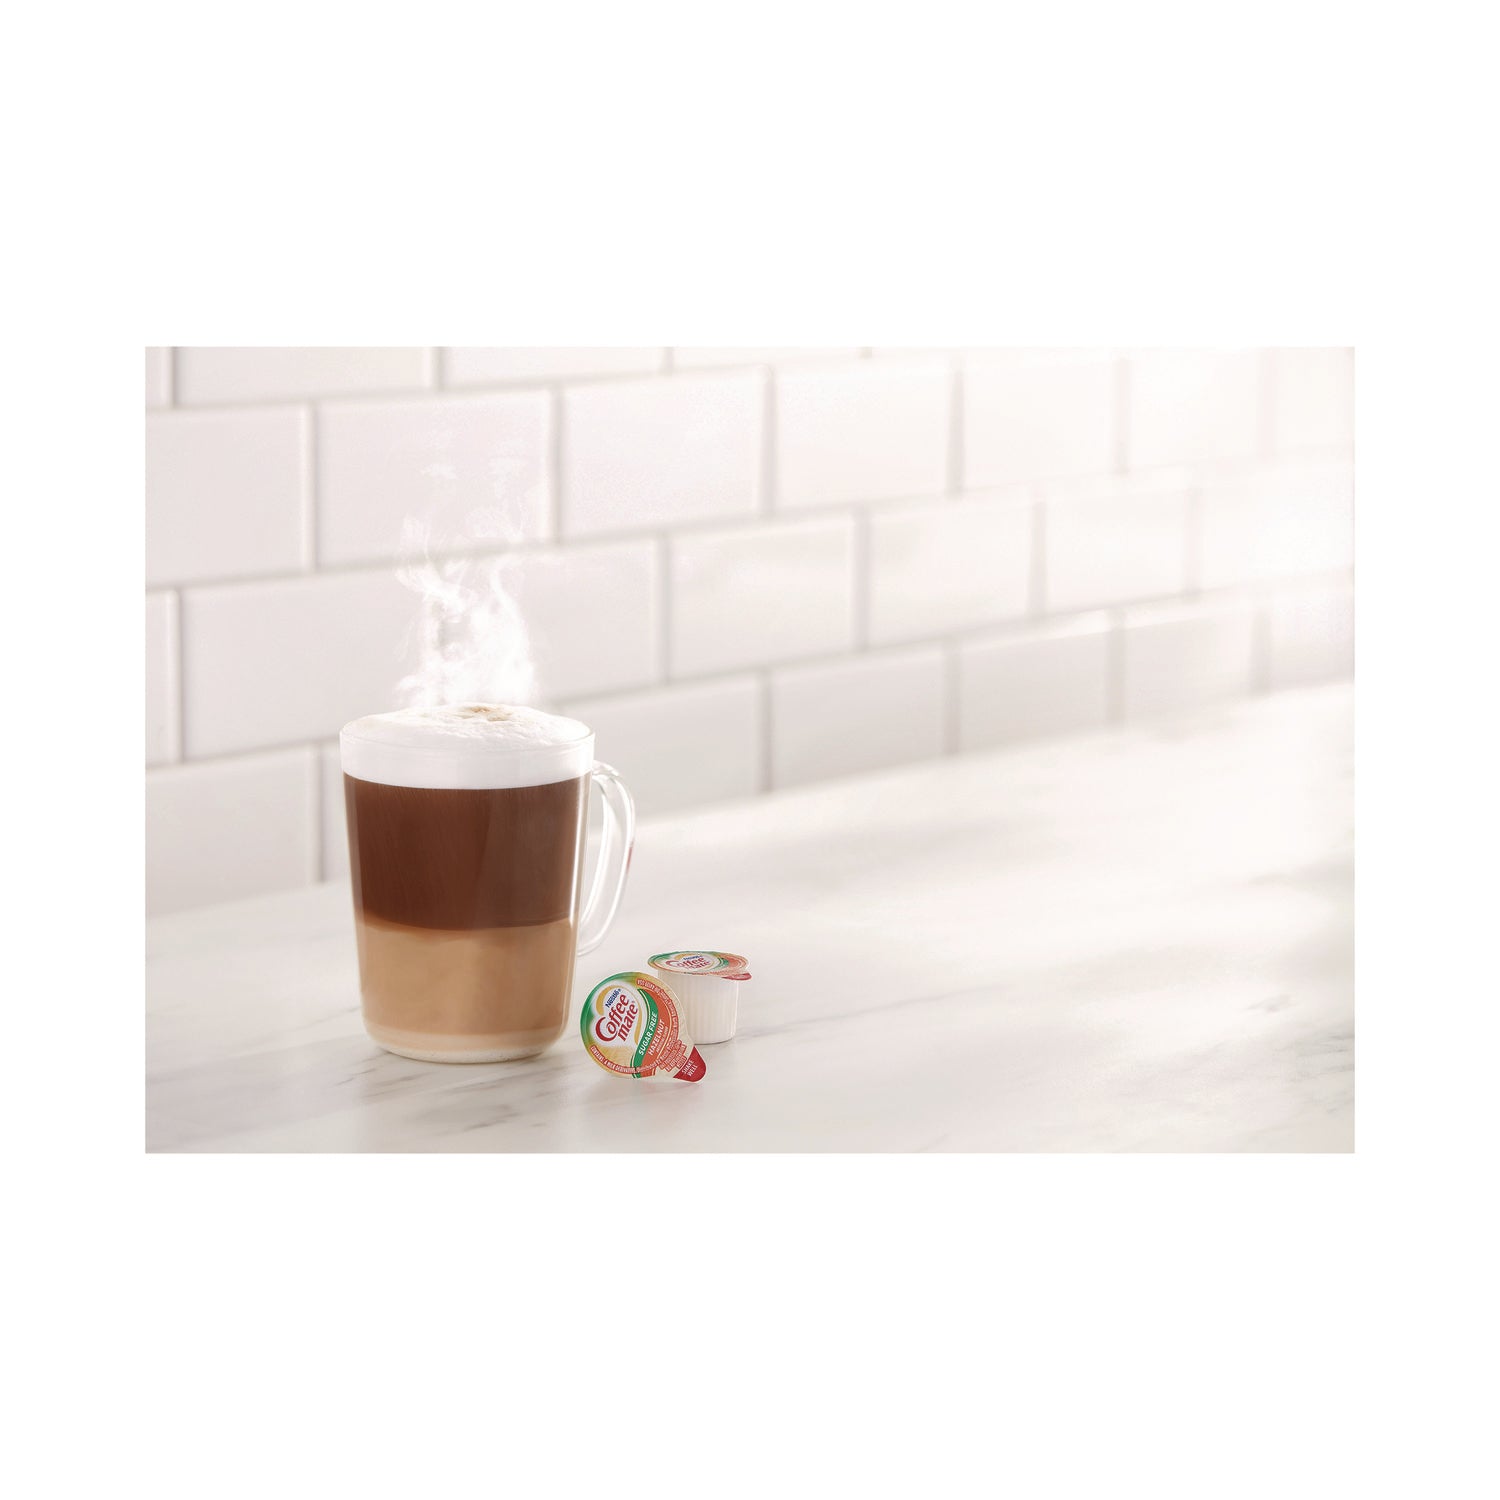 liquid-coffee-creamer-zero-sugar-hazelnut-038-oz-mini-cups-50-box-4-boxes-carton_nes98468ct - 5